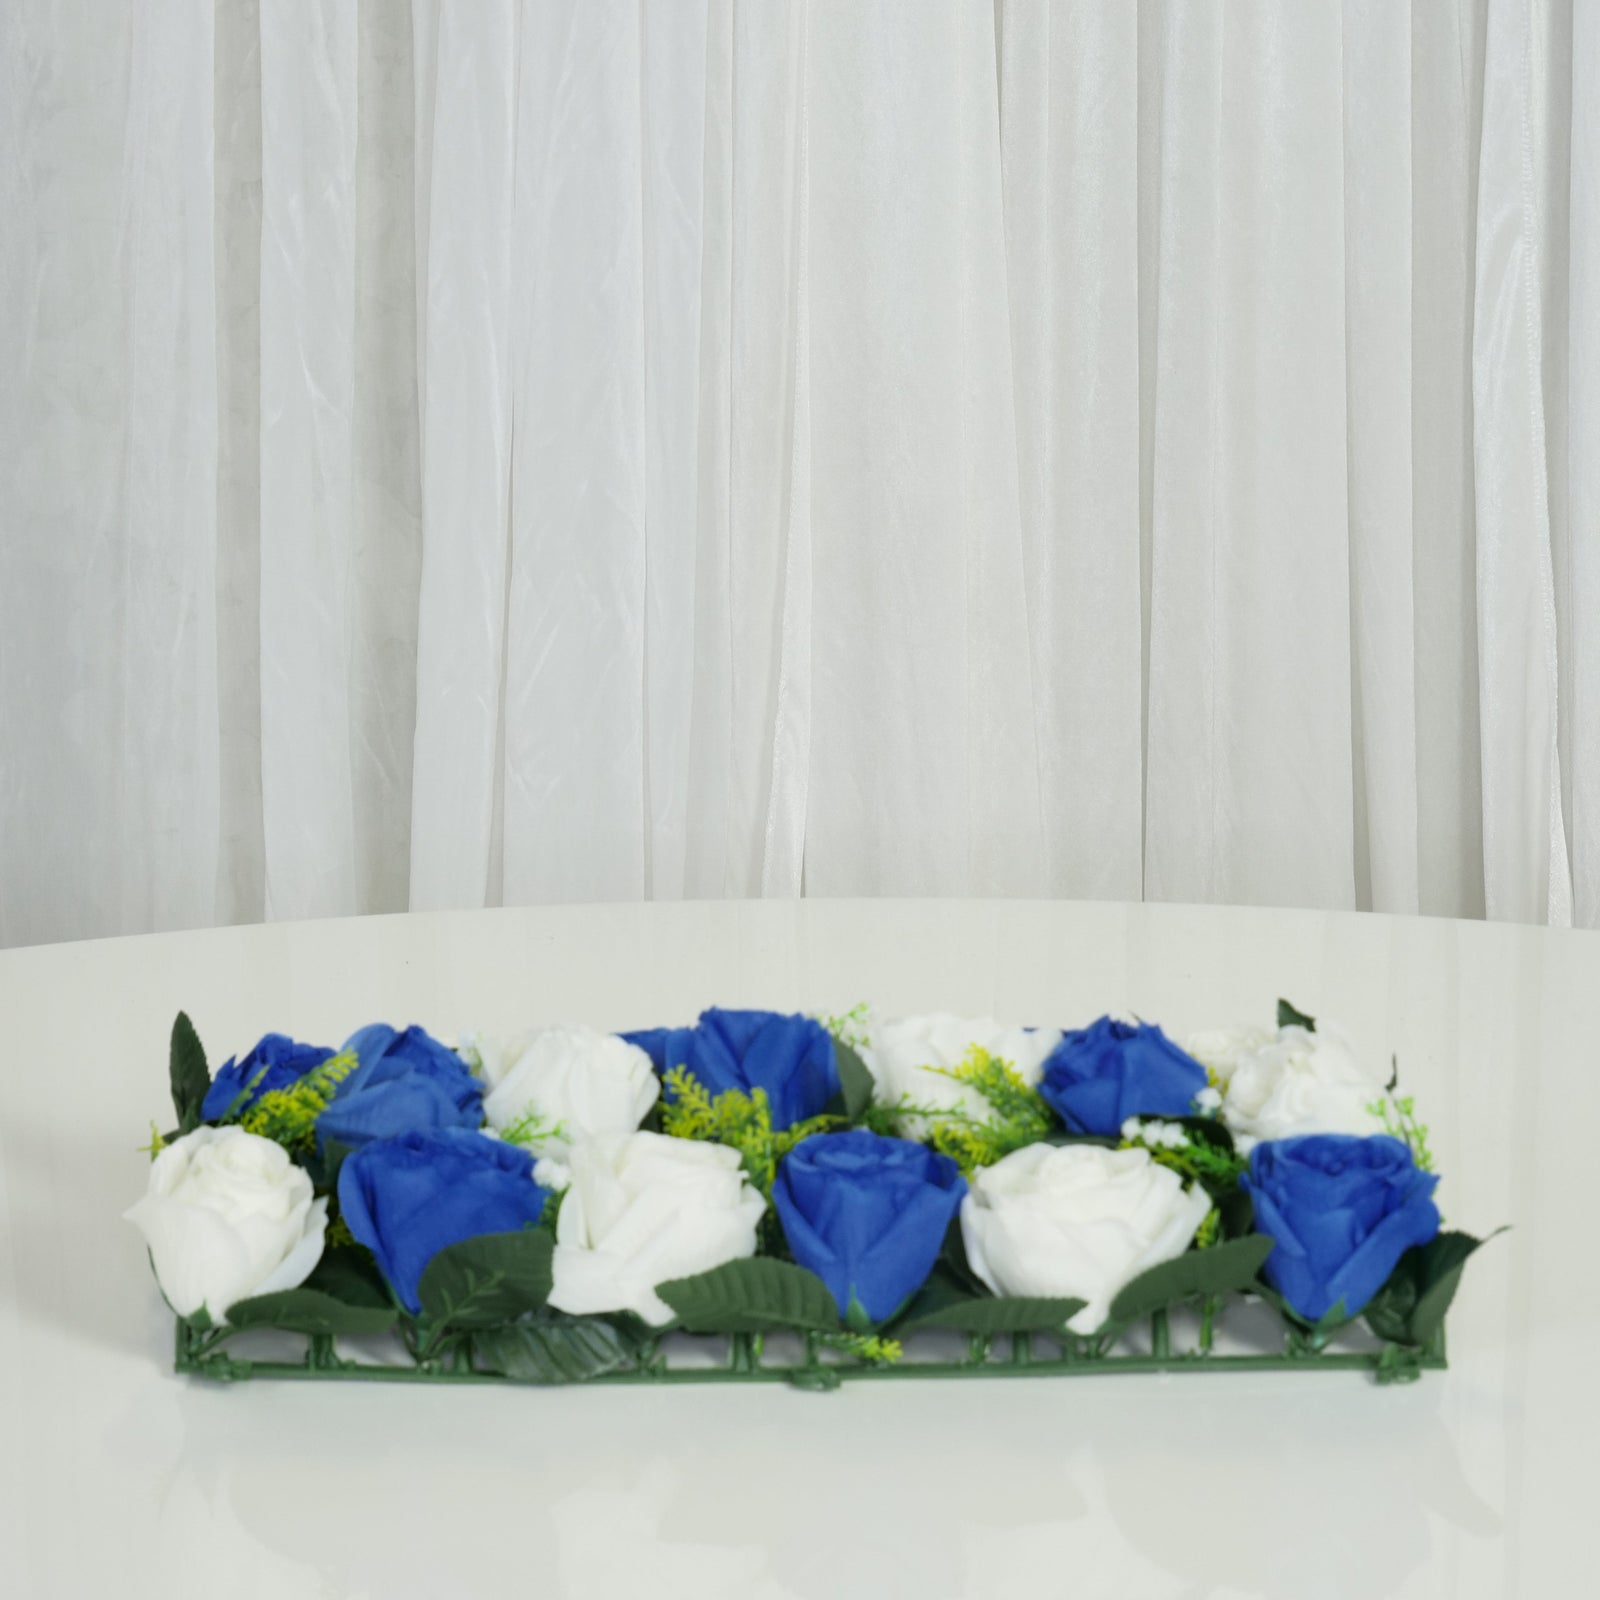 Location - Chemin de table floral rectangulaire 50cm x 25cm - Bleu et blanc